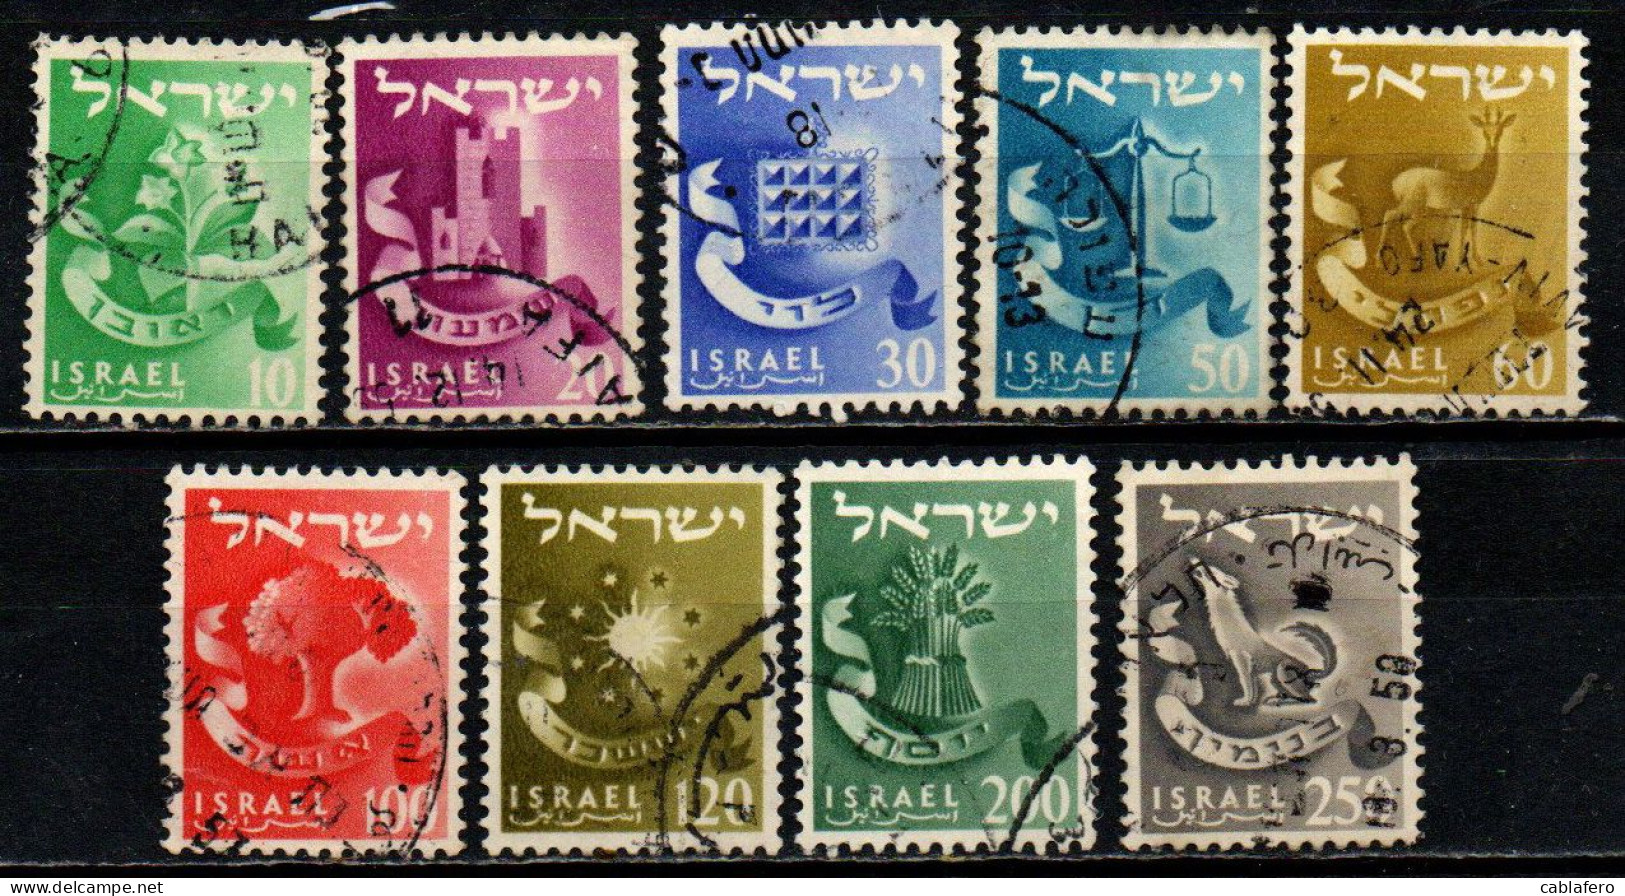 ISRAELE - 1955 - Twelve Tribes - USATI - Usados (sin Tab)